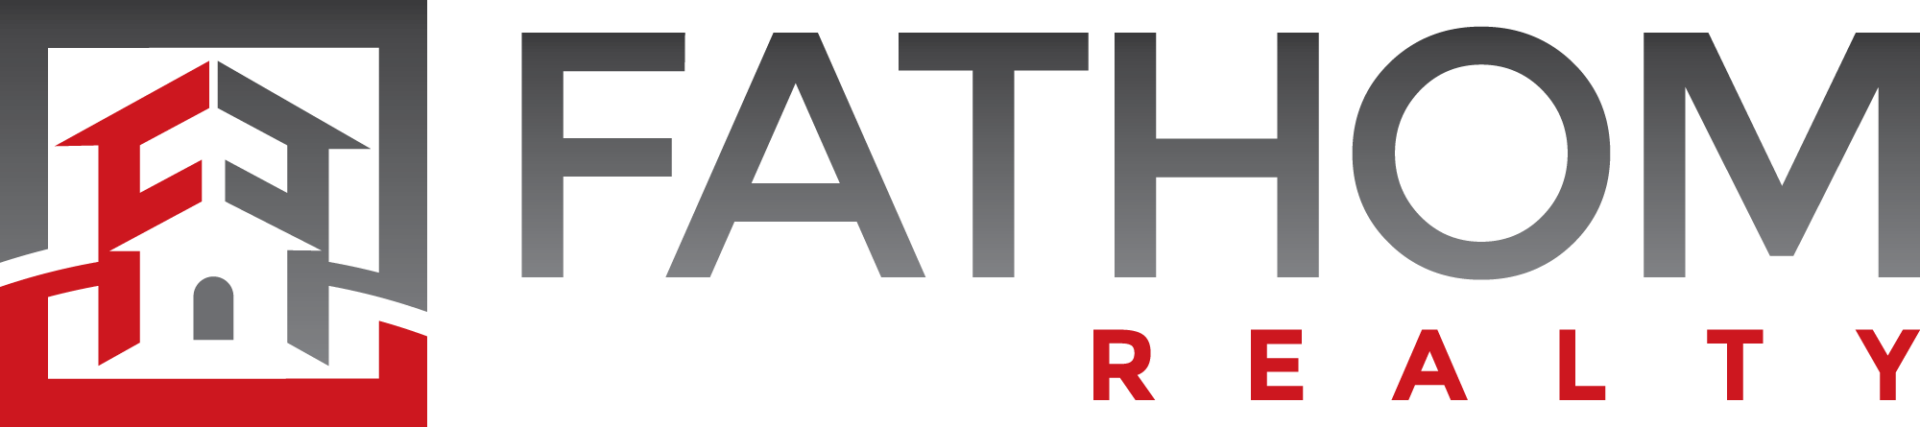 Kate Whitehead logo